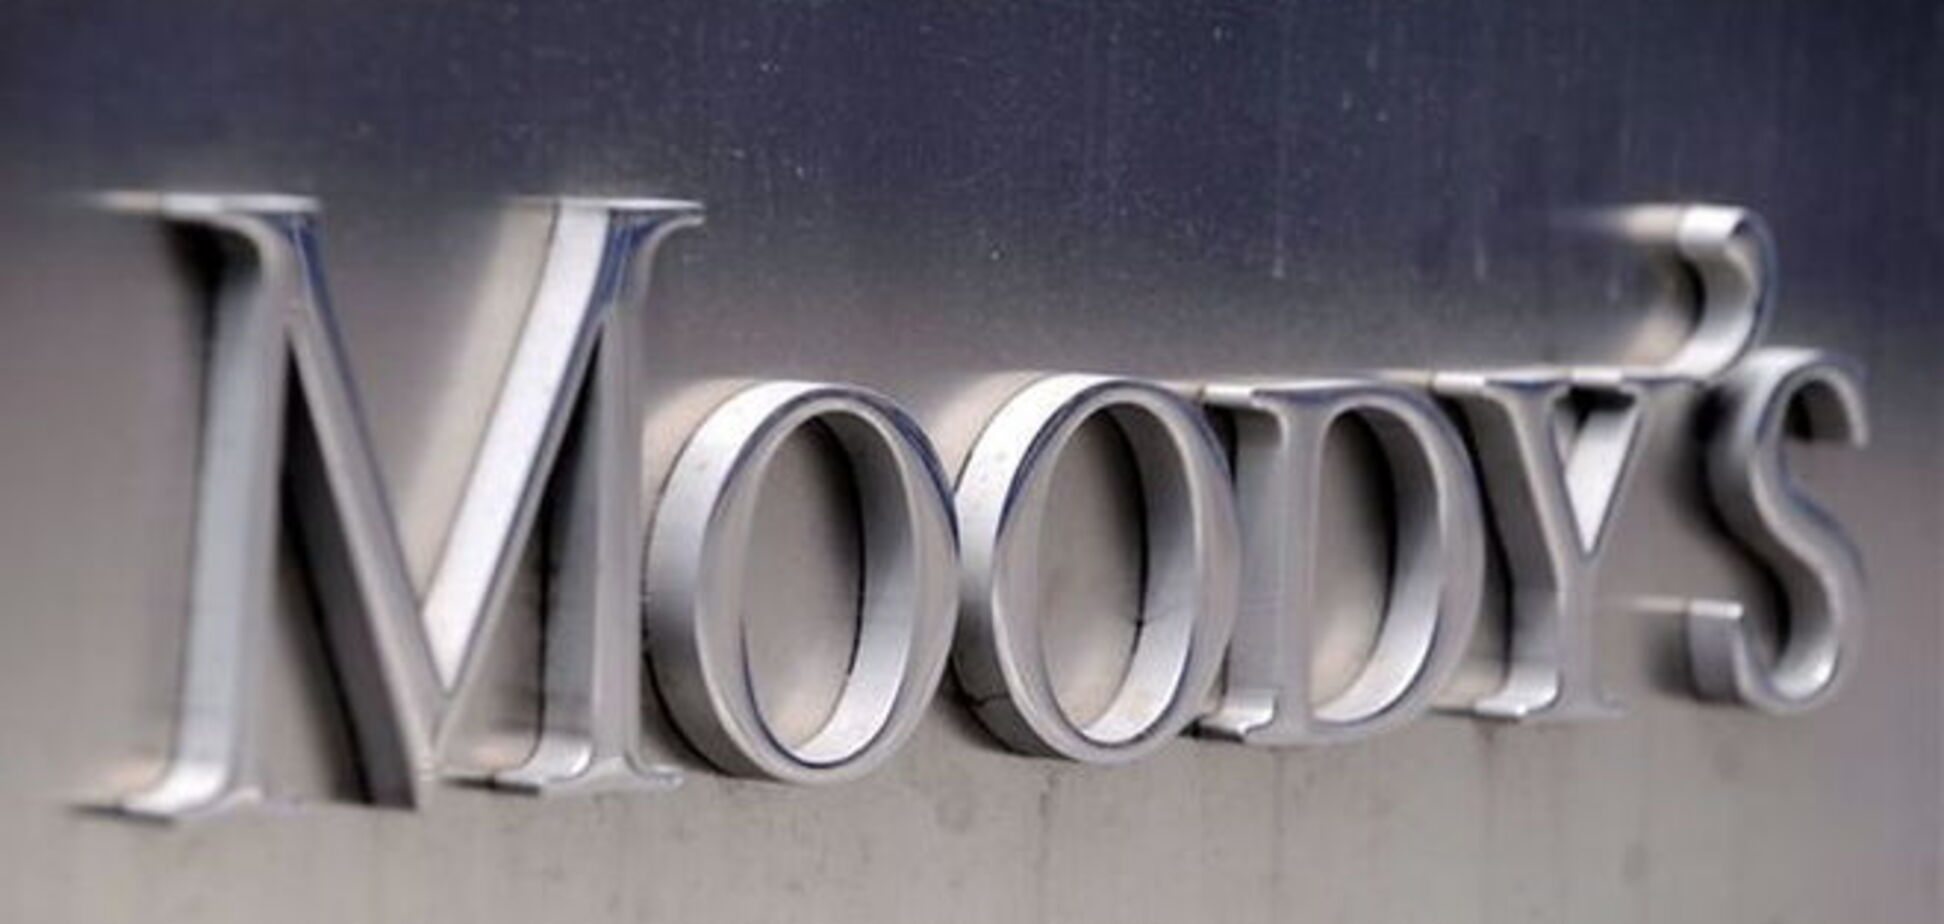 Расслабляться рано: в Moody's назвали новую дату дефолта Украины